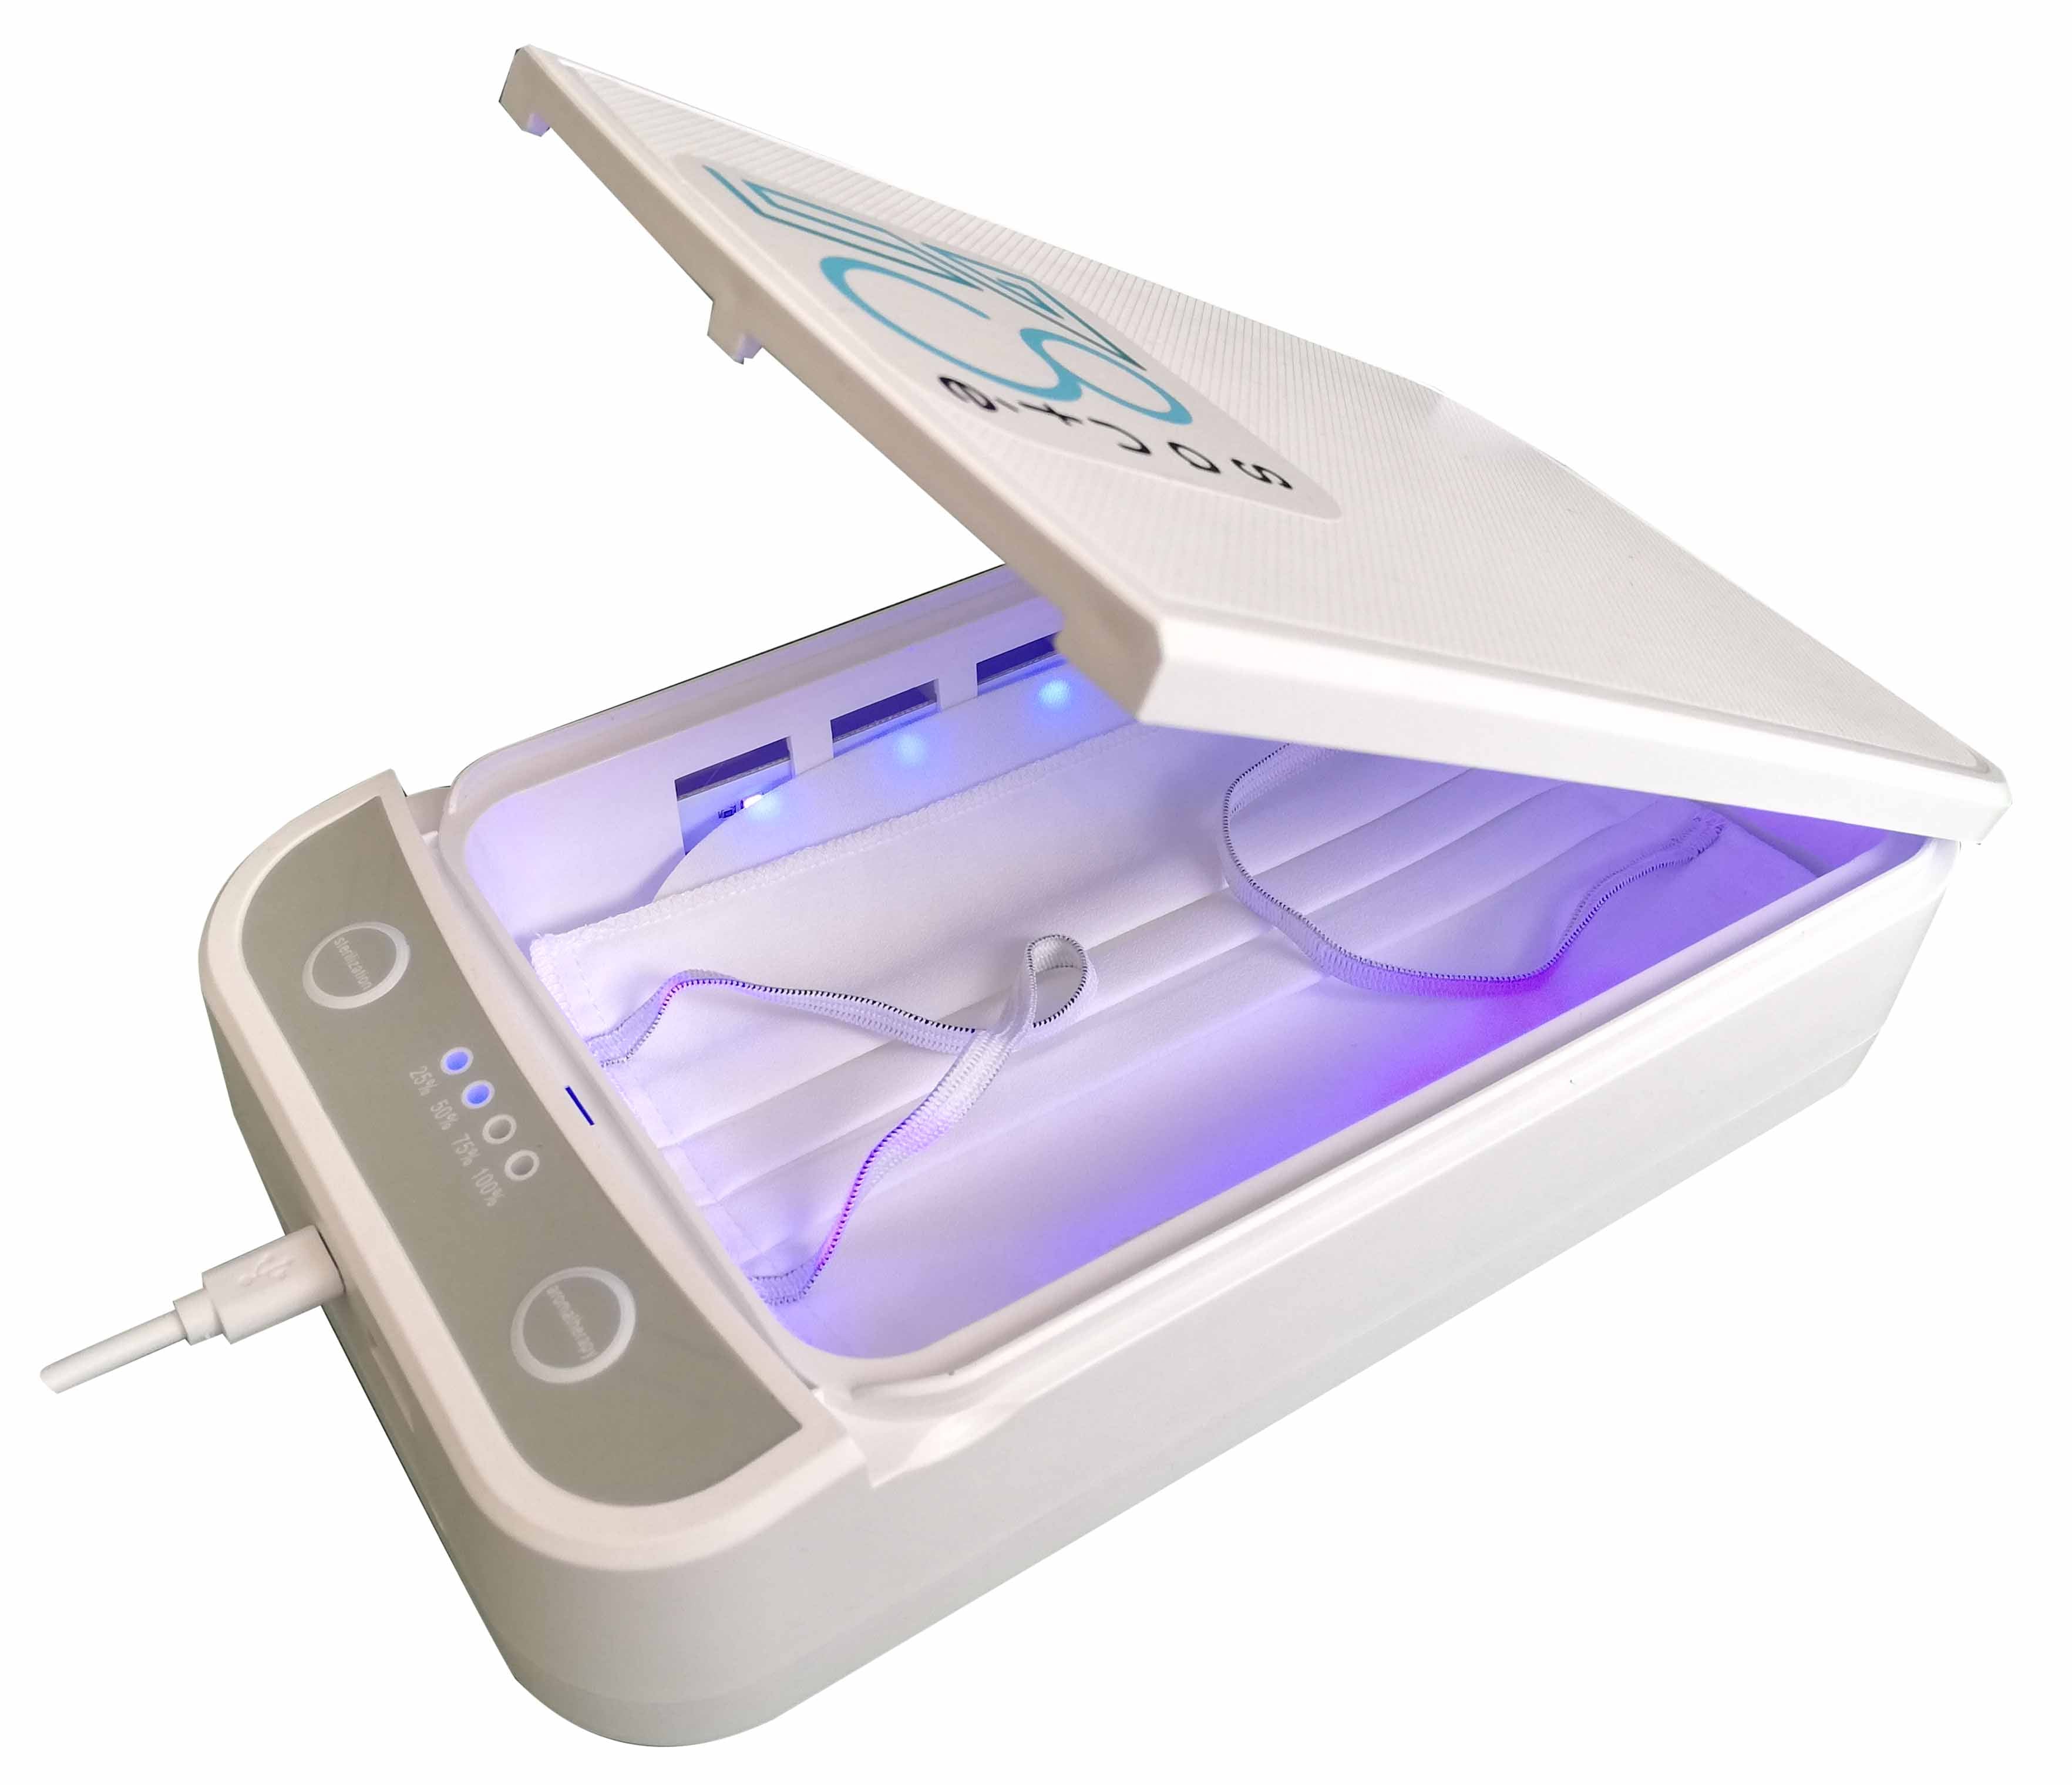 Stérilisateur UV 3 En 1 Pour Téléphone Portable, Boîte De Stérilisation  Avec 2 Lampes UVC, Stérilisateur Portable Pour Smartphone, Montre